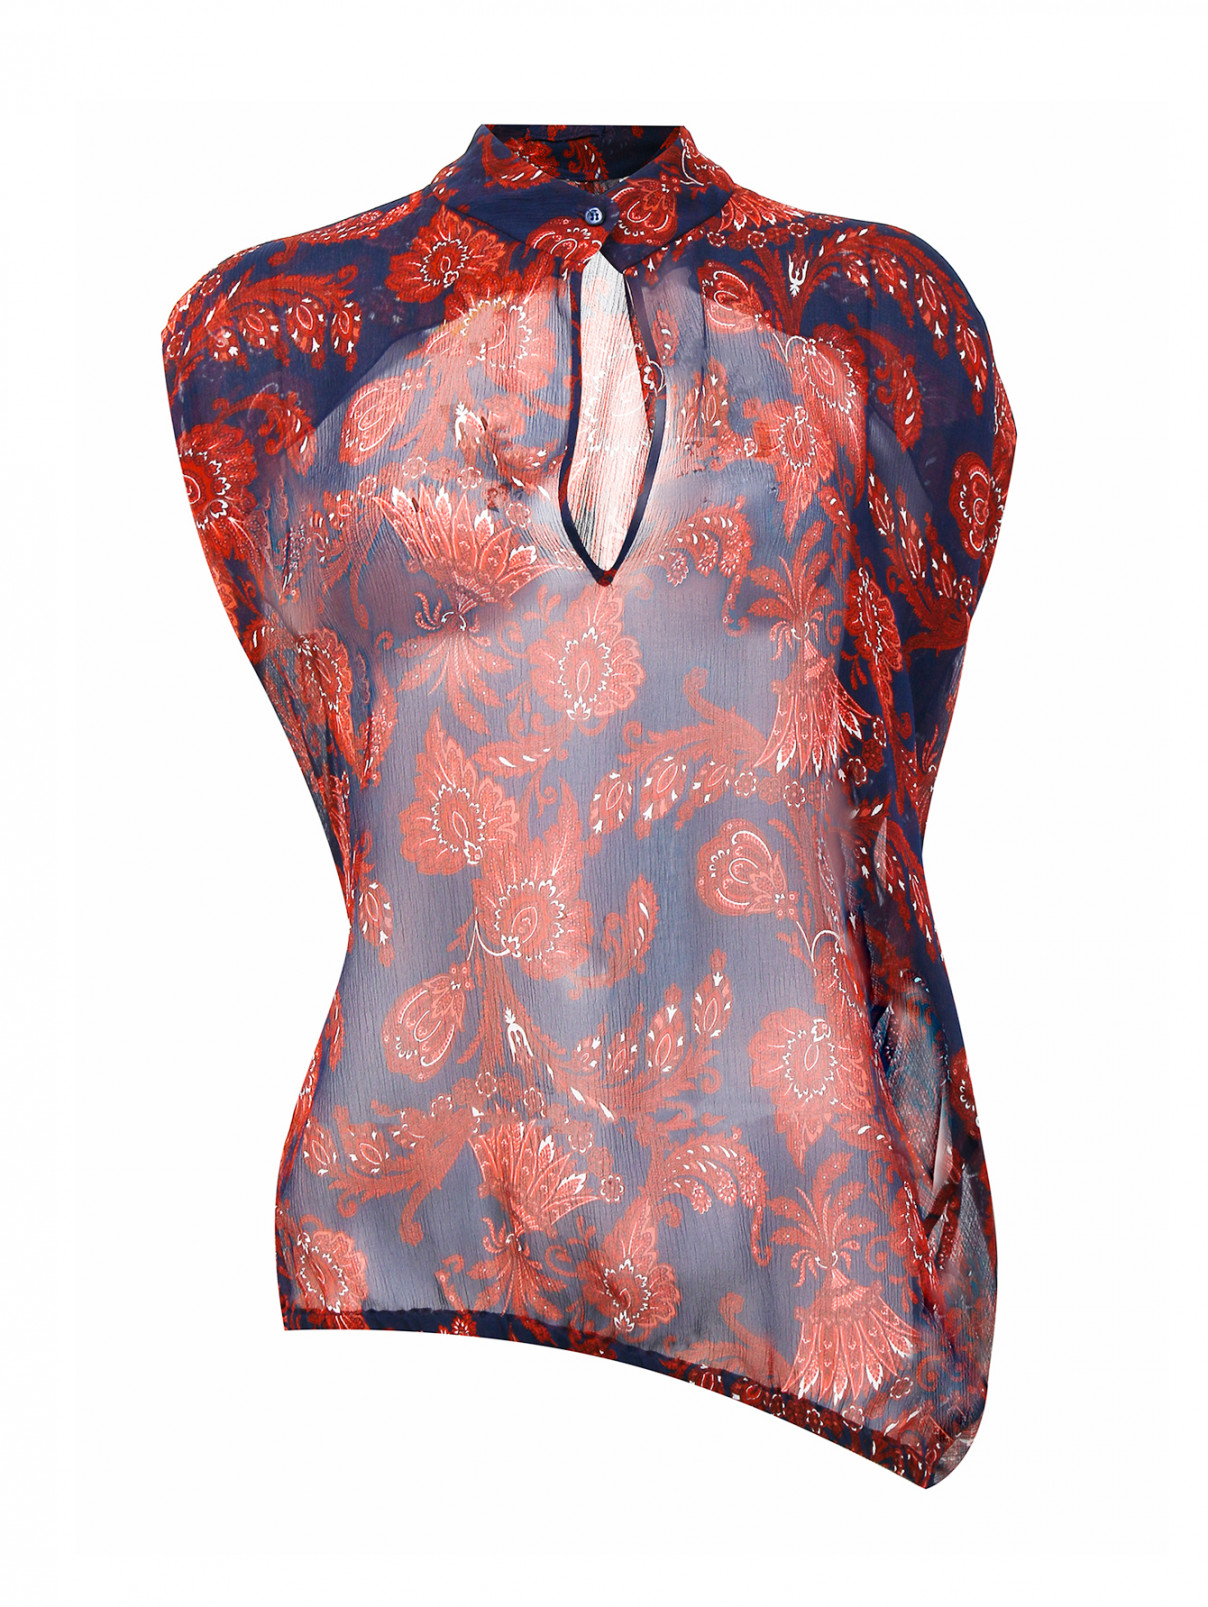 Полупрозрачная блуза из шелка асимметричного кроя с узором "пейсли" Strenesse  –  Общий вид  – Цвет:  Узор